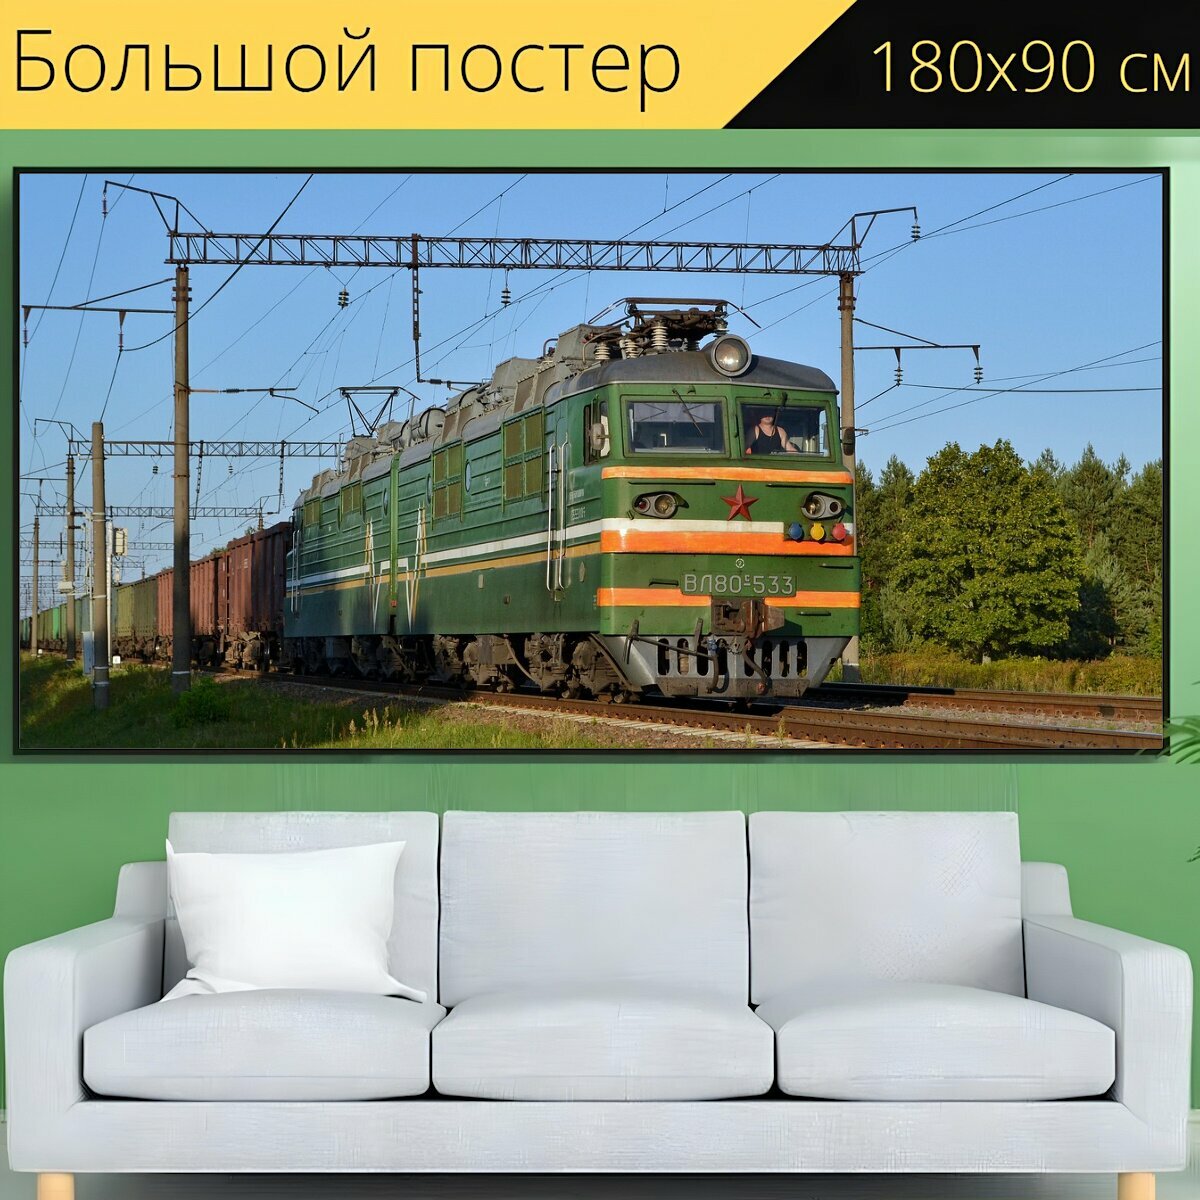 Большой постер "Поезд, железная дорога, электровоз" 180 x 90 см. для интерьера